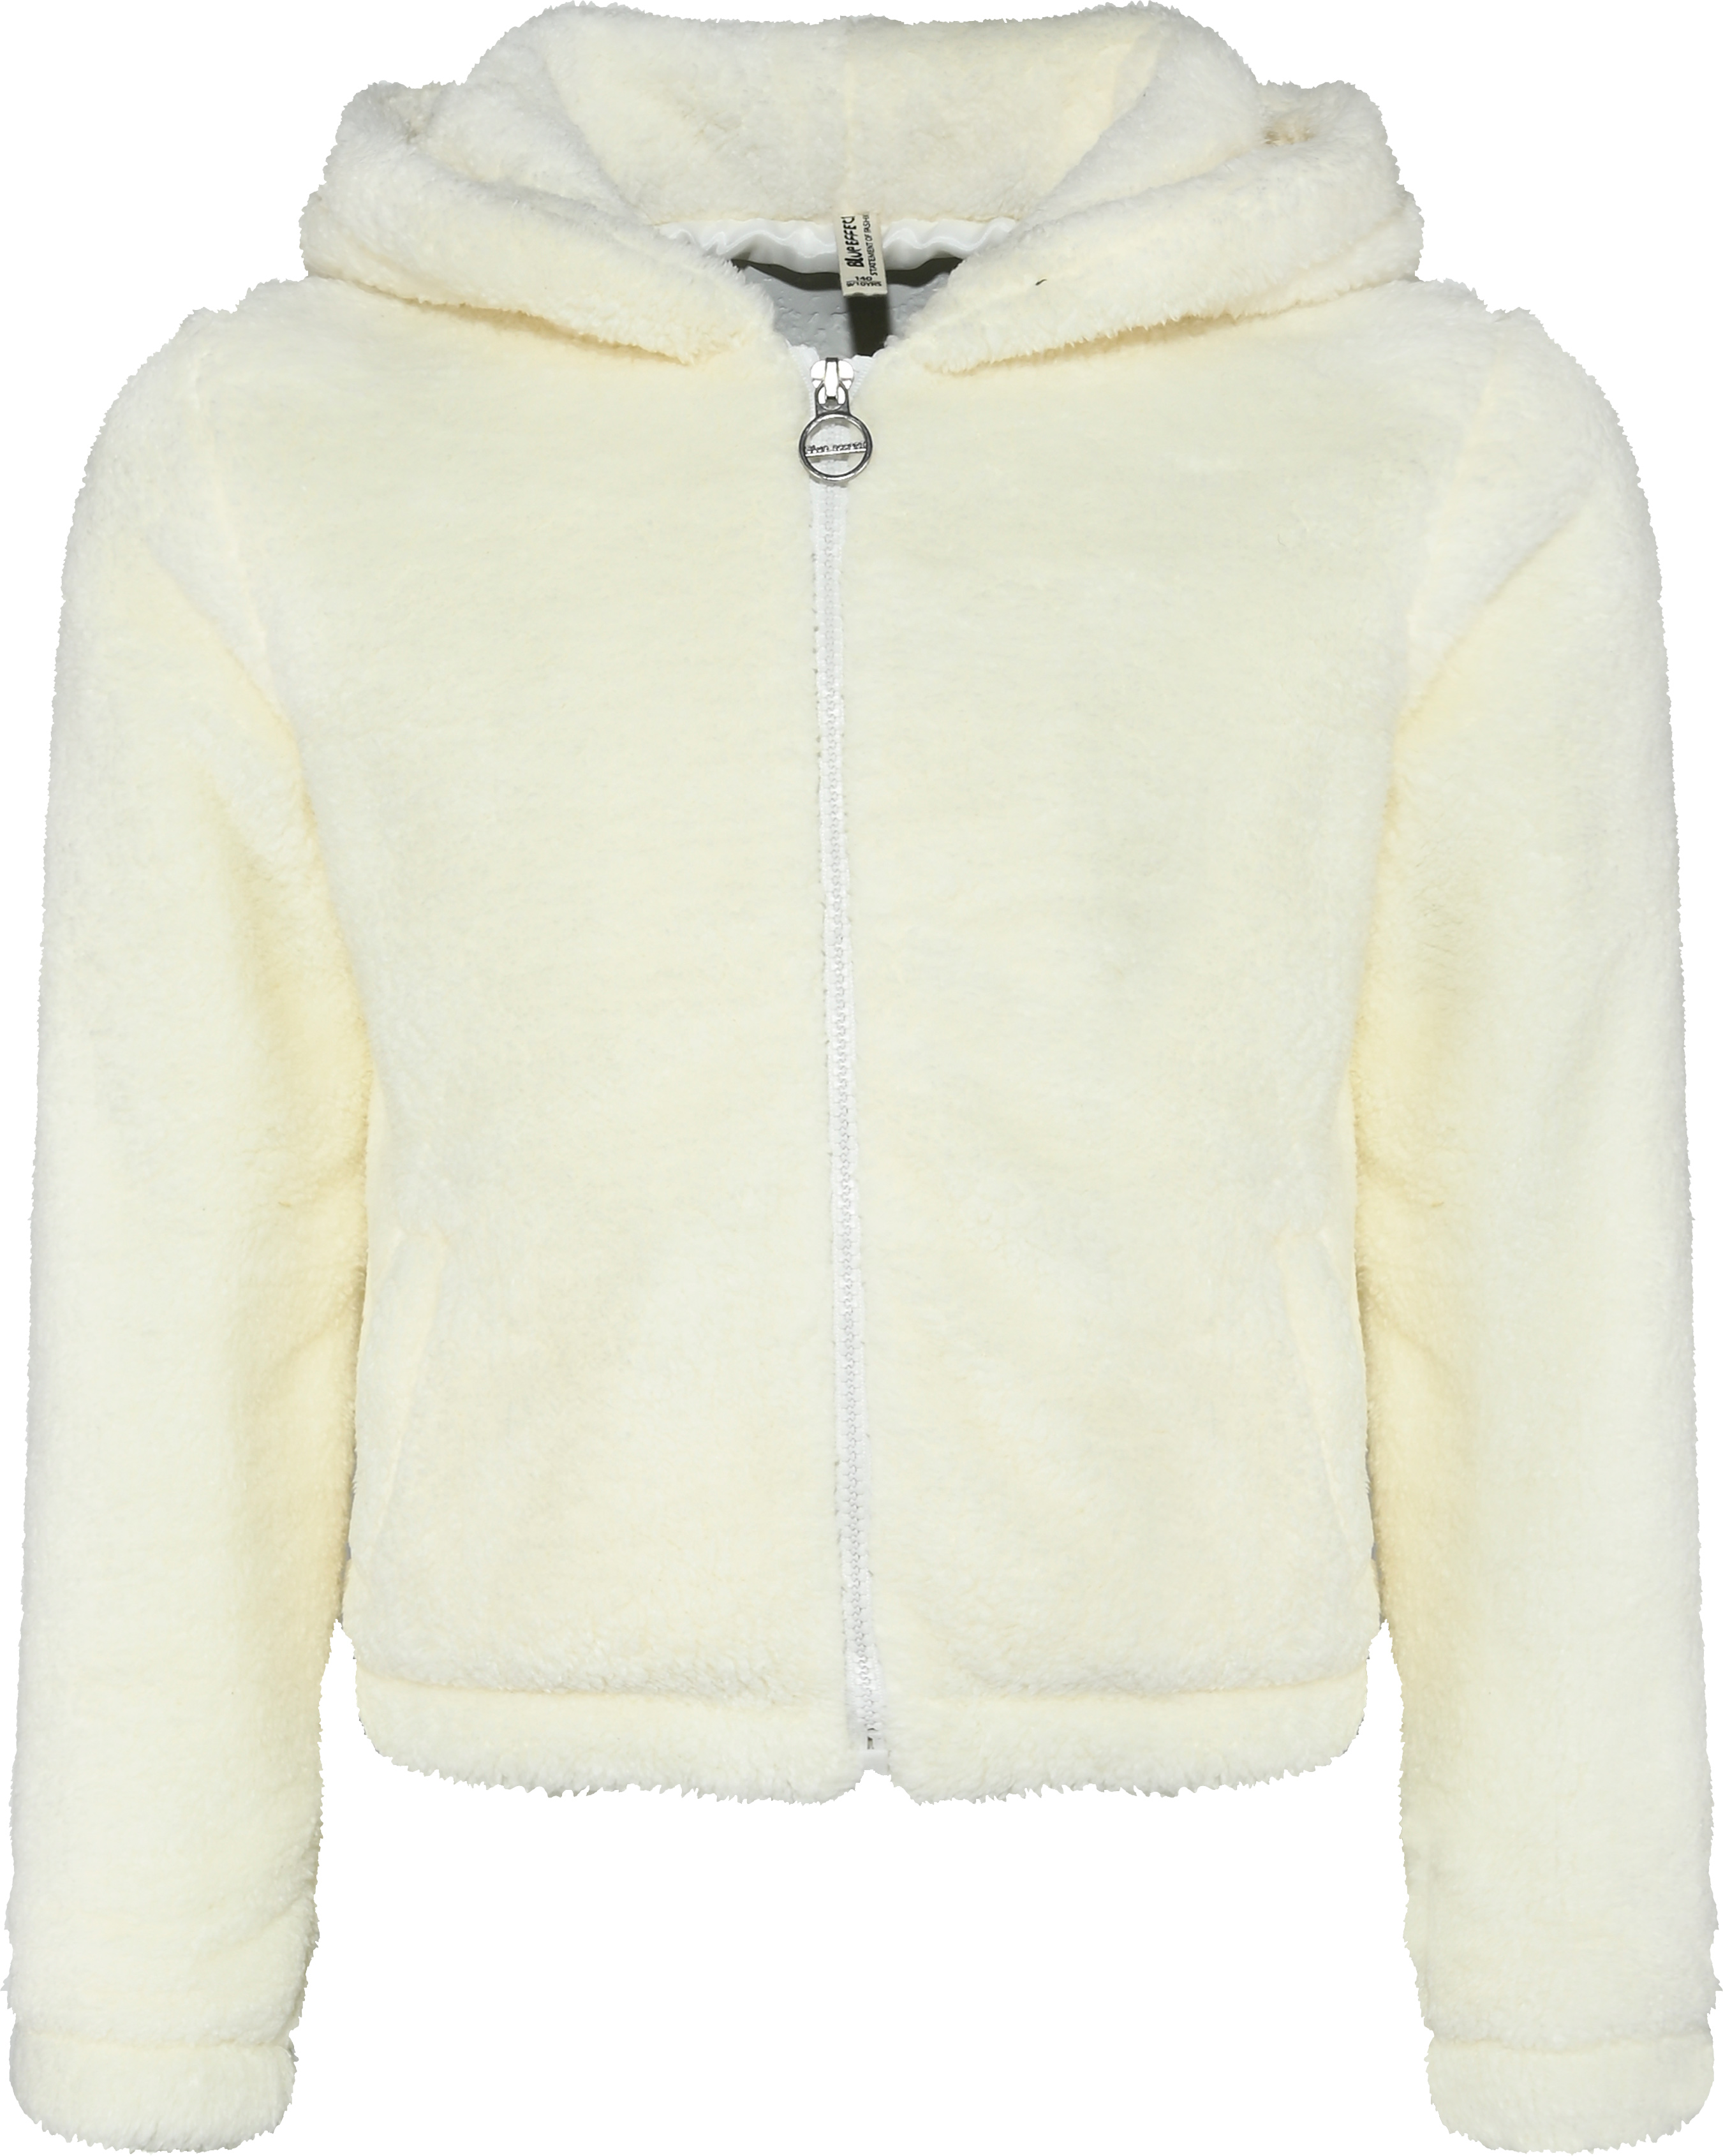 8161-Girls Fleece Jacket